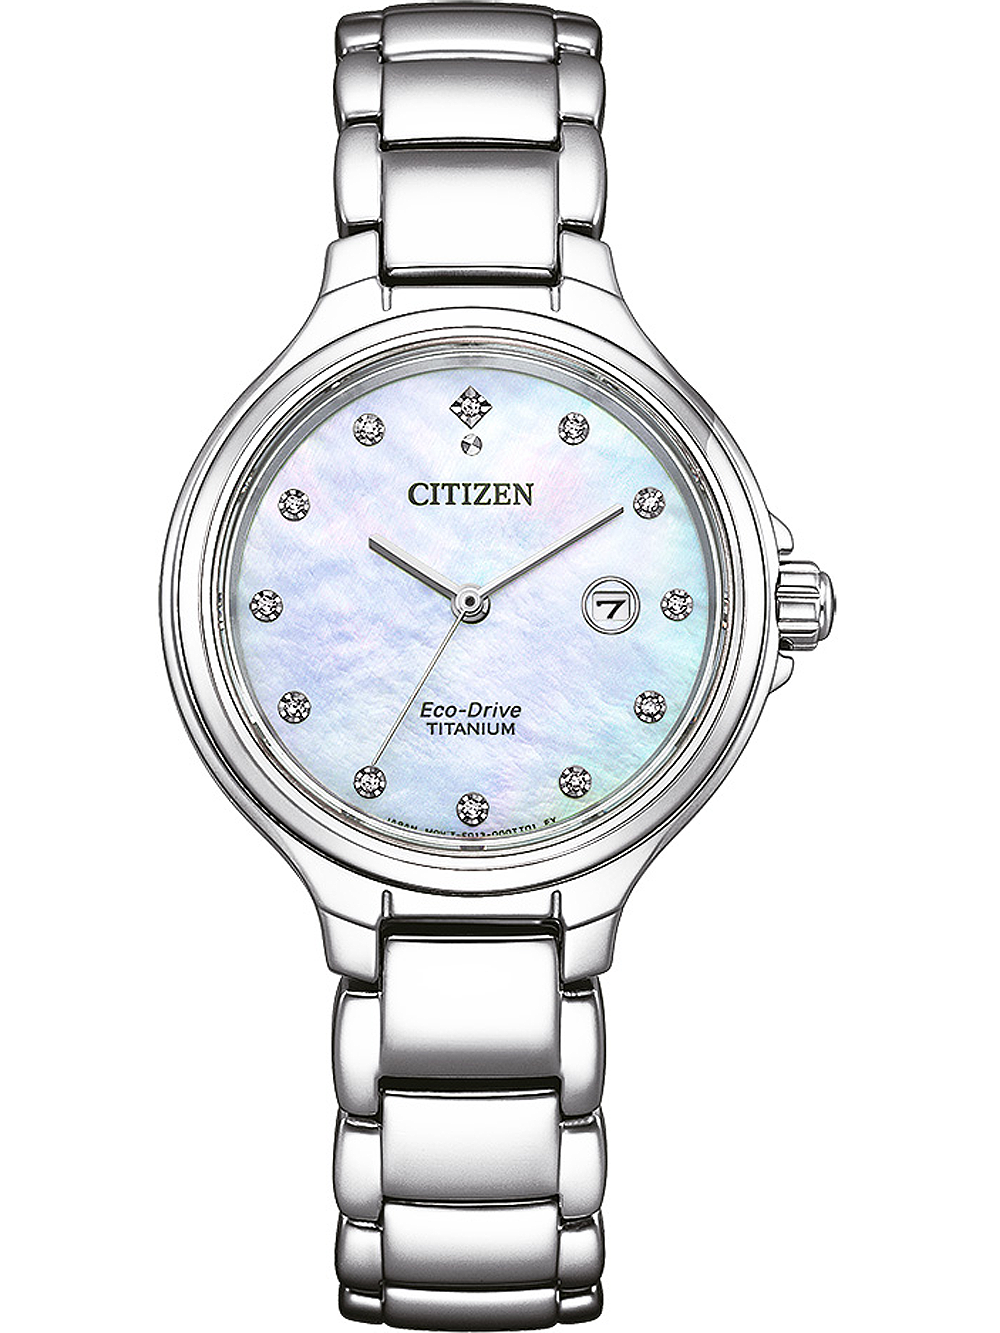 Citizen EW2680 84D Eco Drive Titanium Damenuhr 31mm 10ATM  - Onlineshop Timeshop24